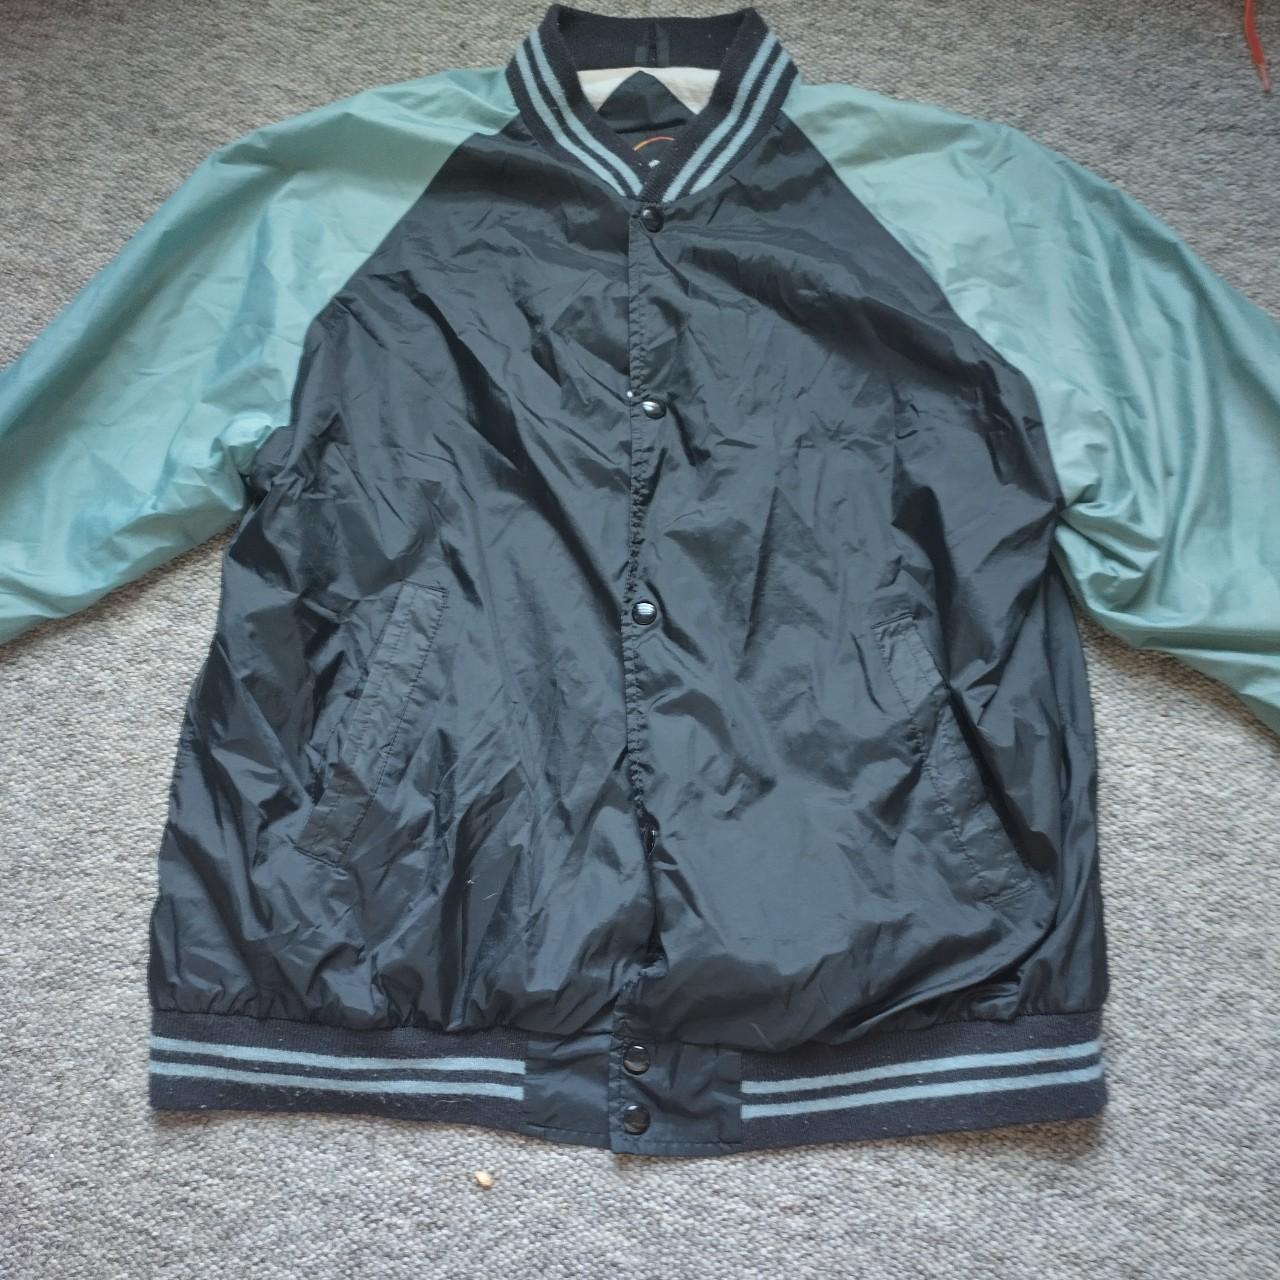 Flying colours vintage varsity jacket Mens size... - Depop